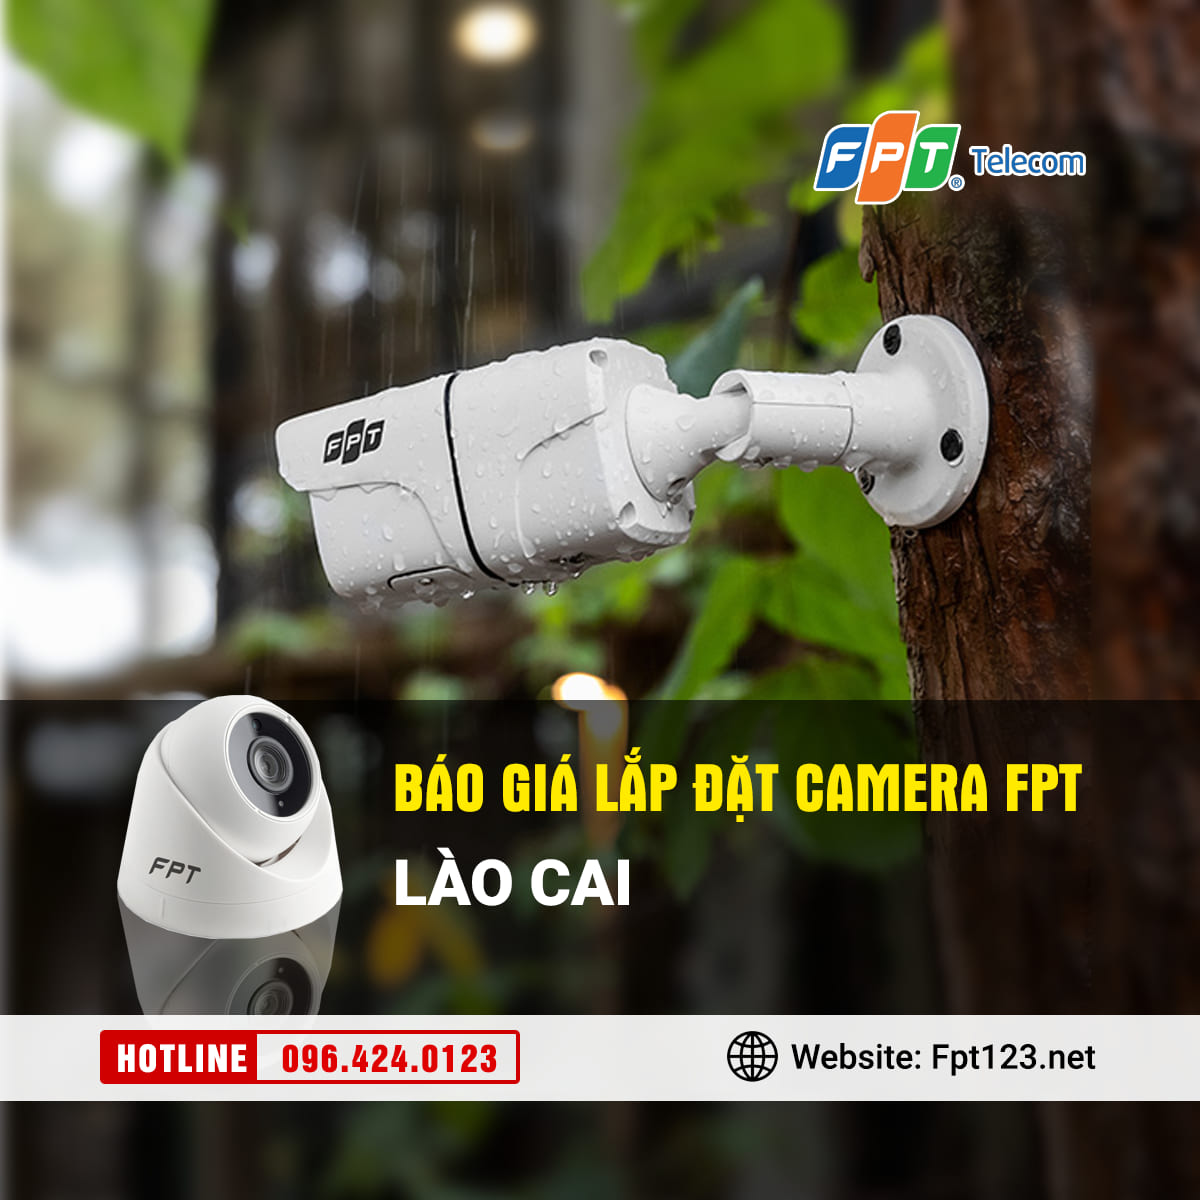 Lắp đặt camera FPT Sa Pa, Lào Cai